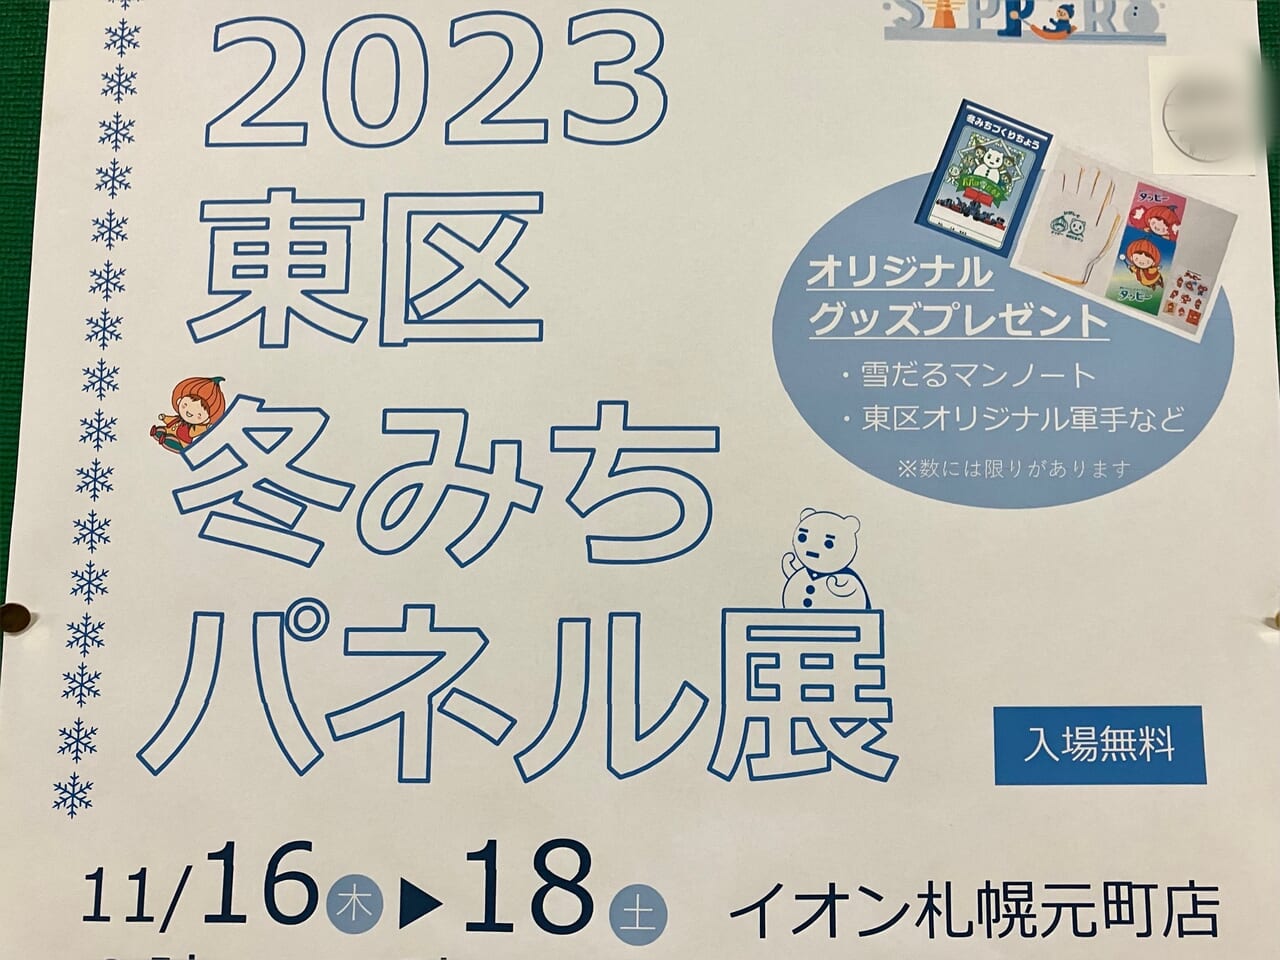 冬みちについてどれくらい知ってる？ イオン札幌元町で「2023東区冬みちパネル展」が開催されますよ。